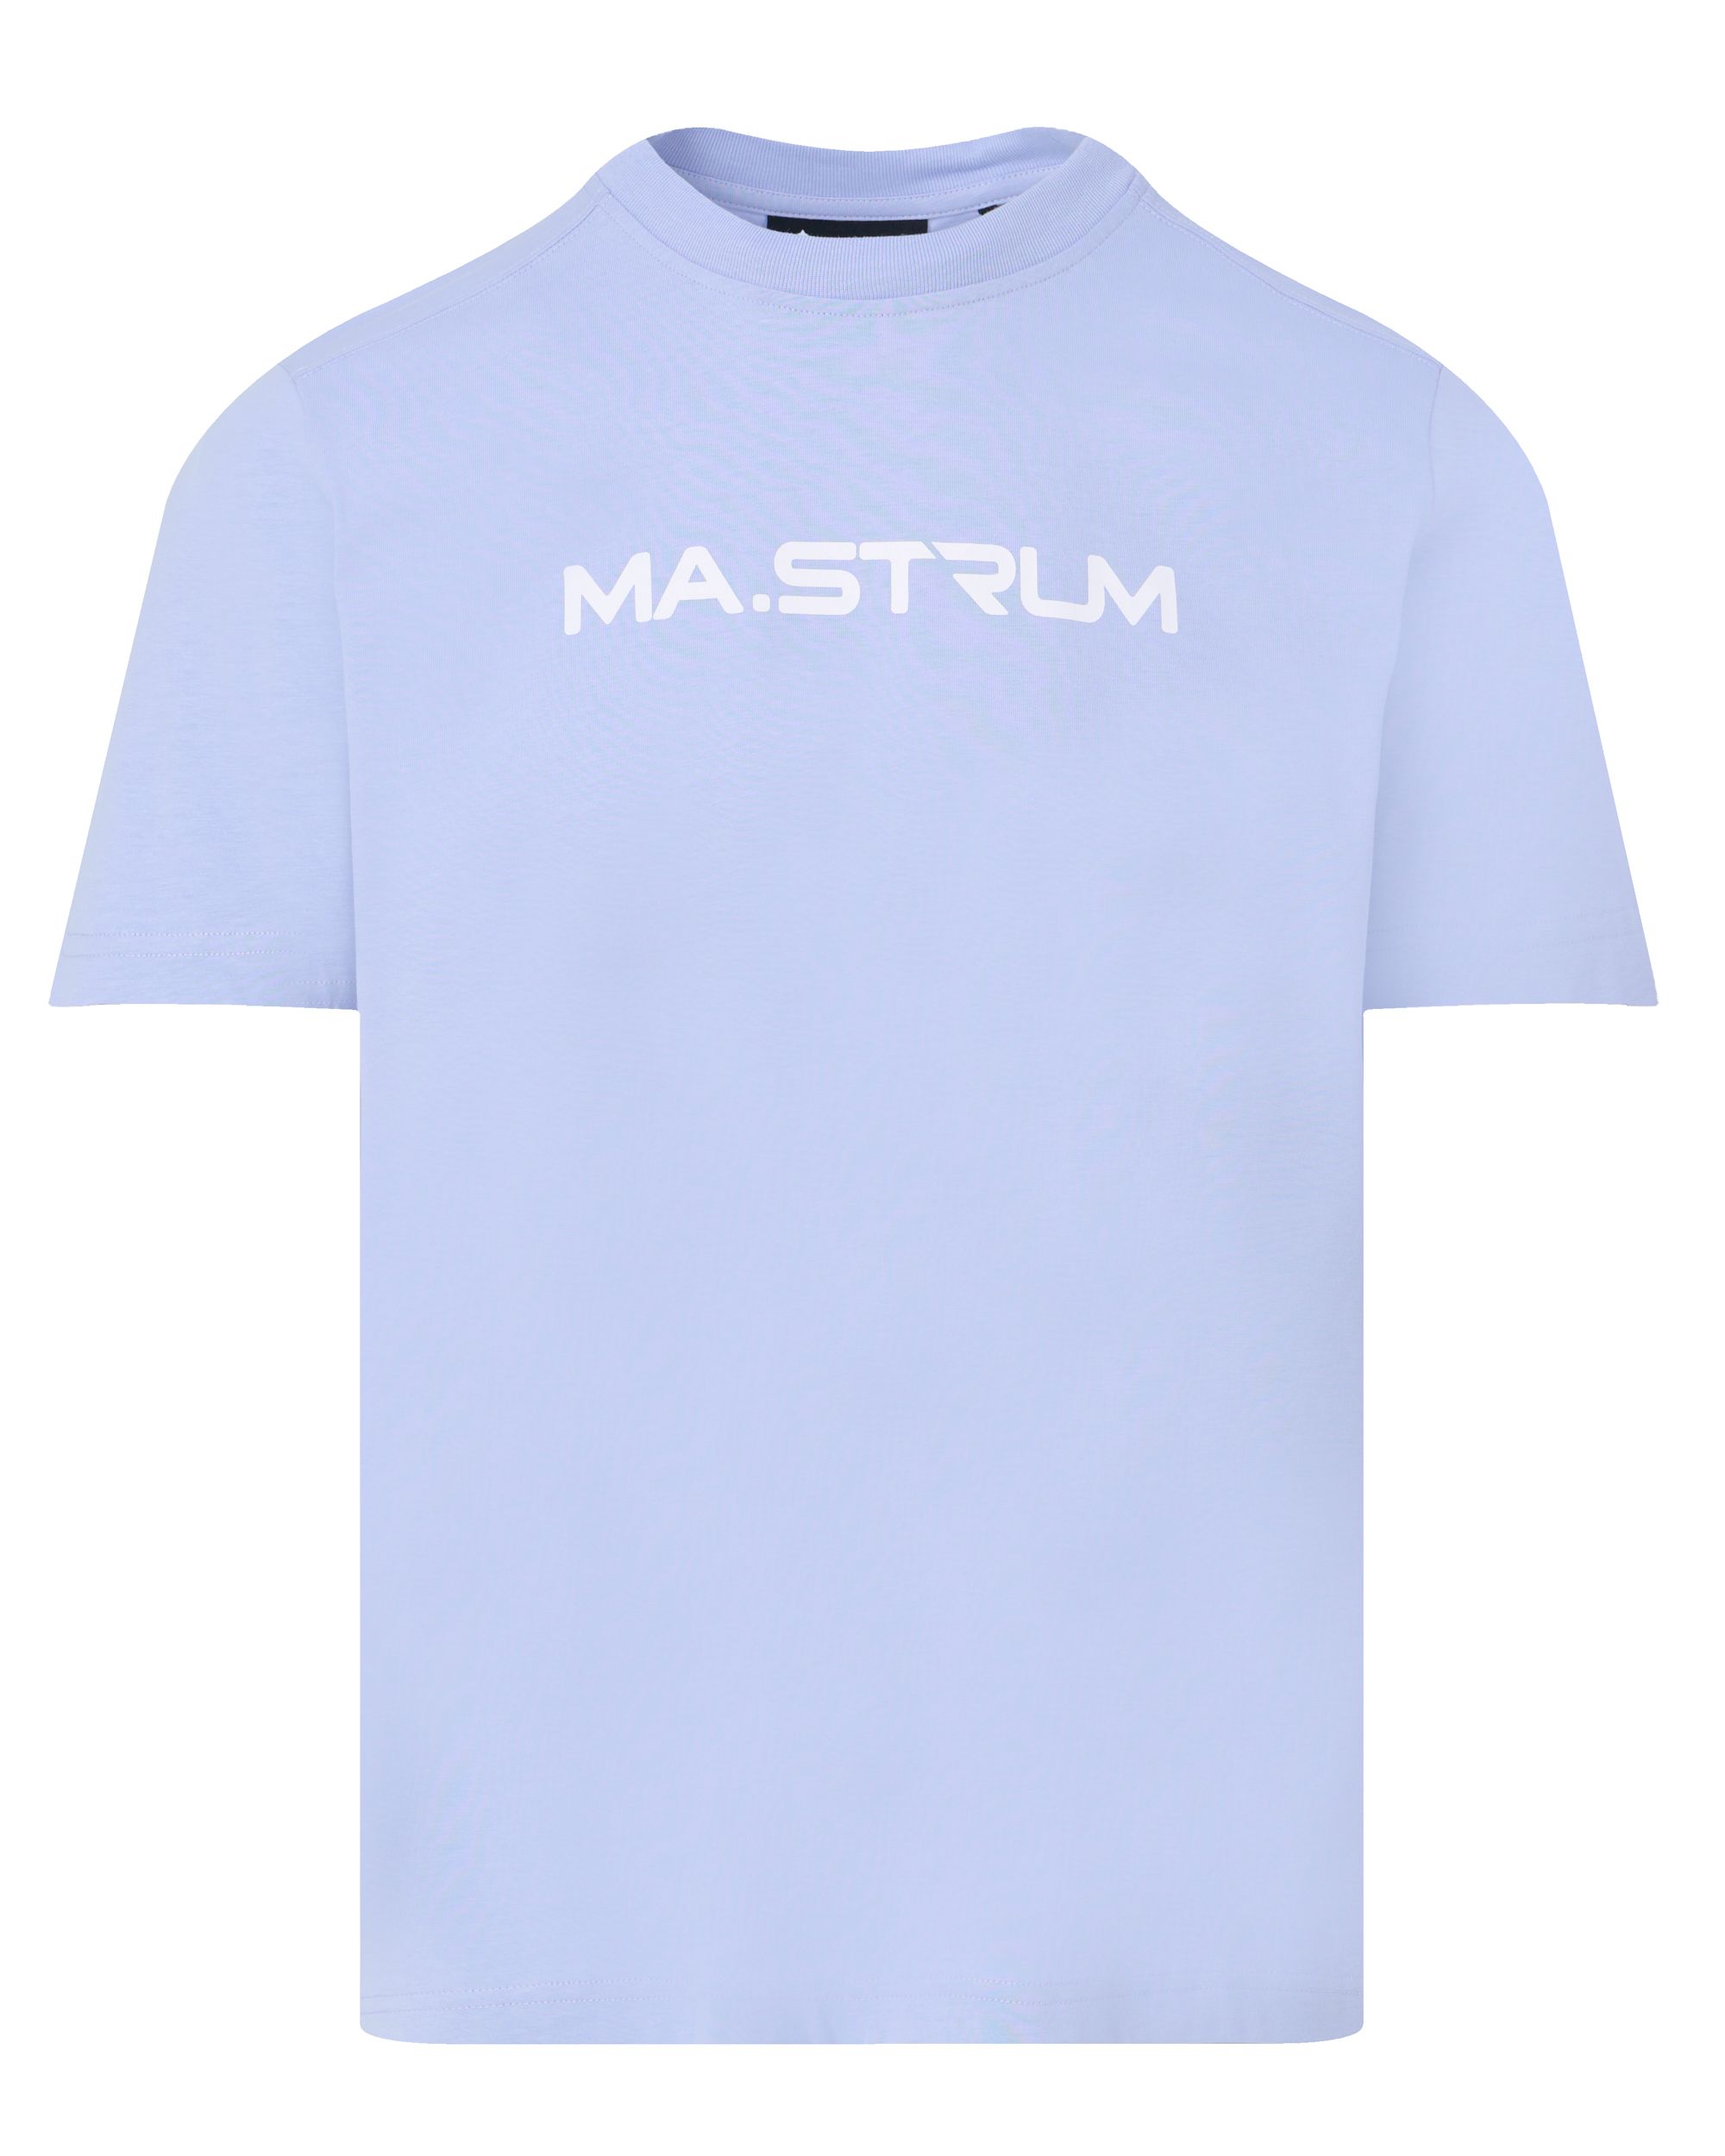 MA.STRUM T-shirt KM Paars 093299-001-L